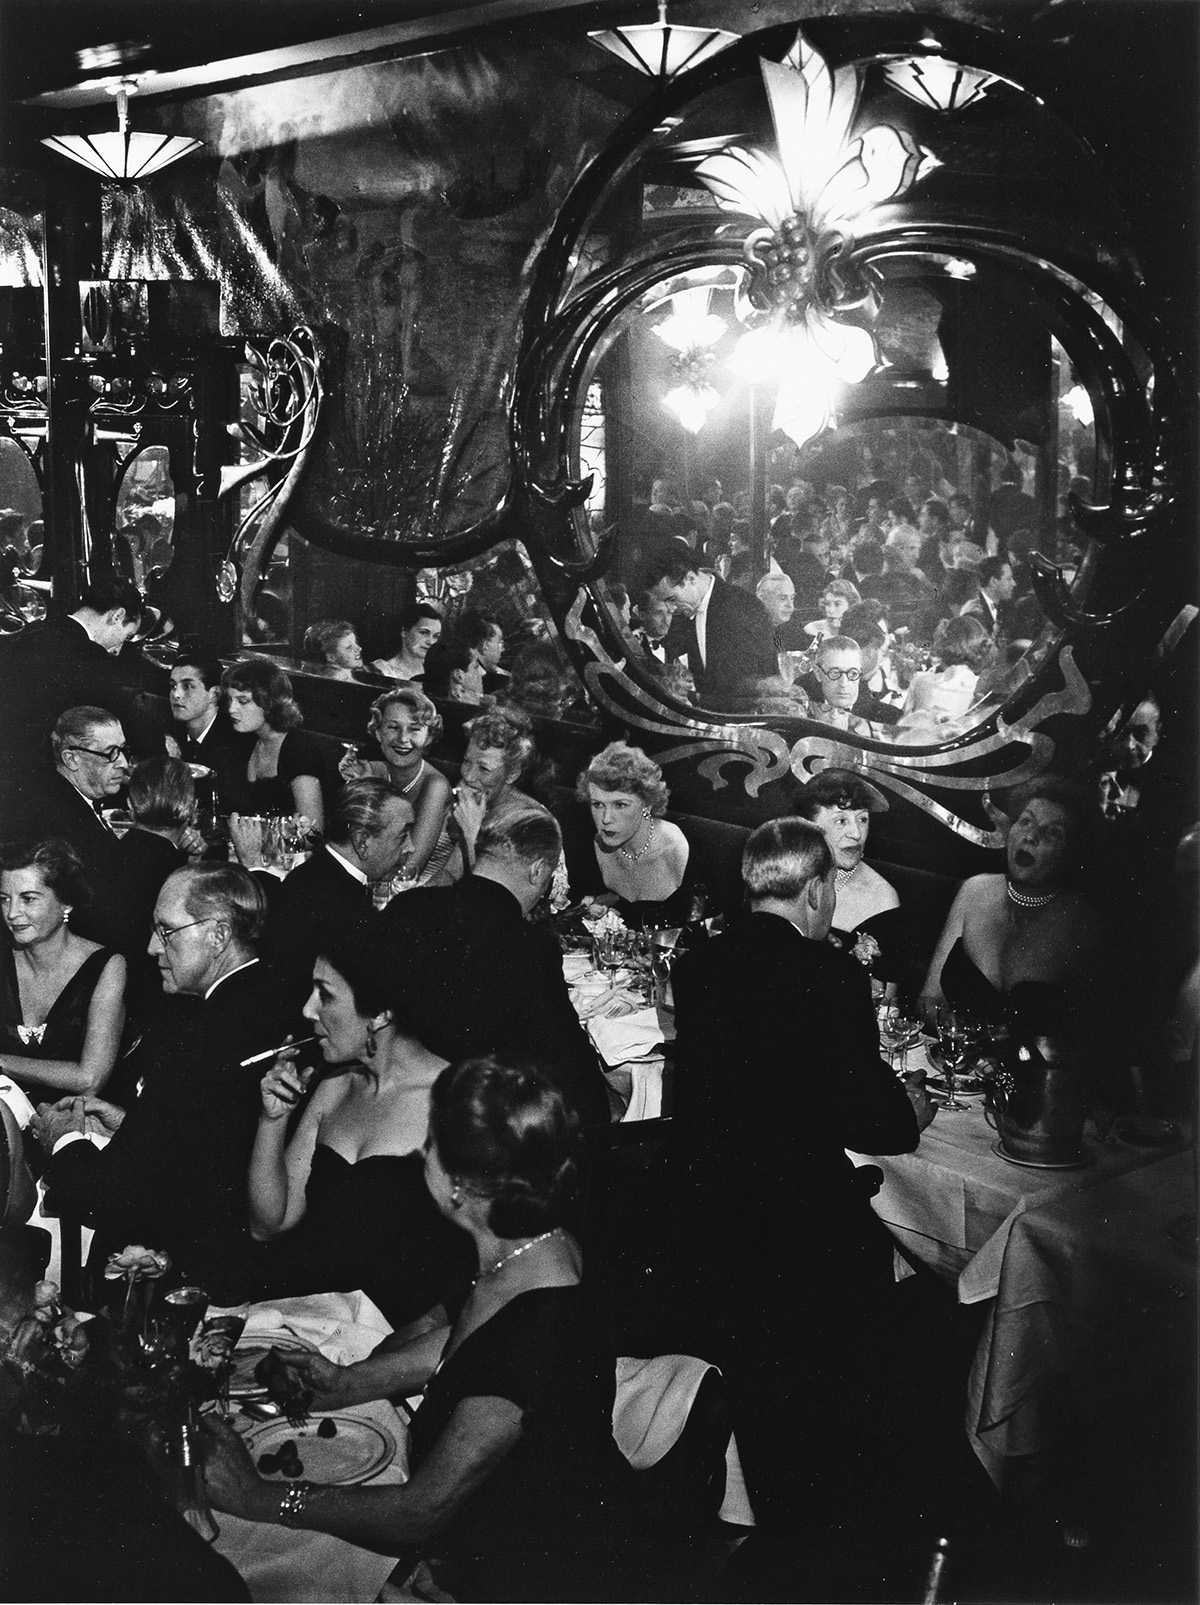 Soirée de gala chez Maxim's, Paris by Brassaï, 1949